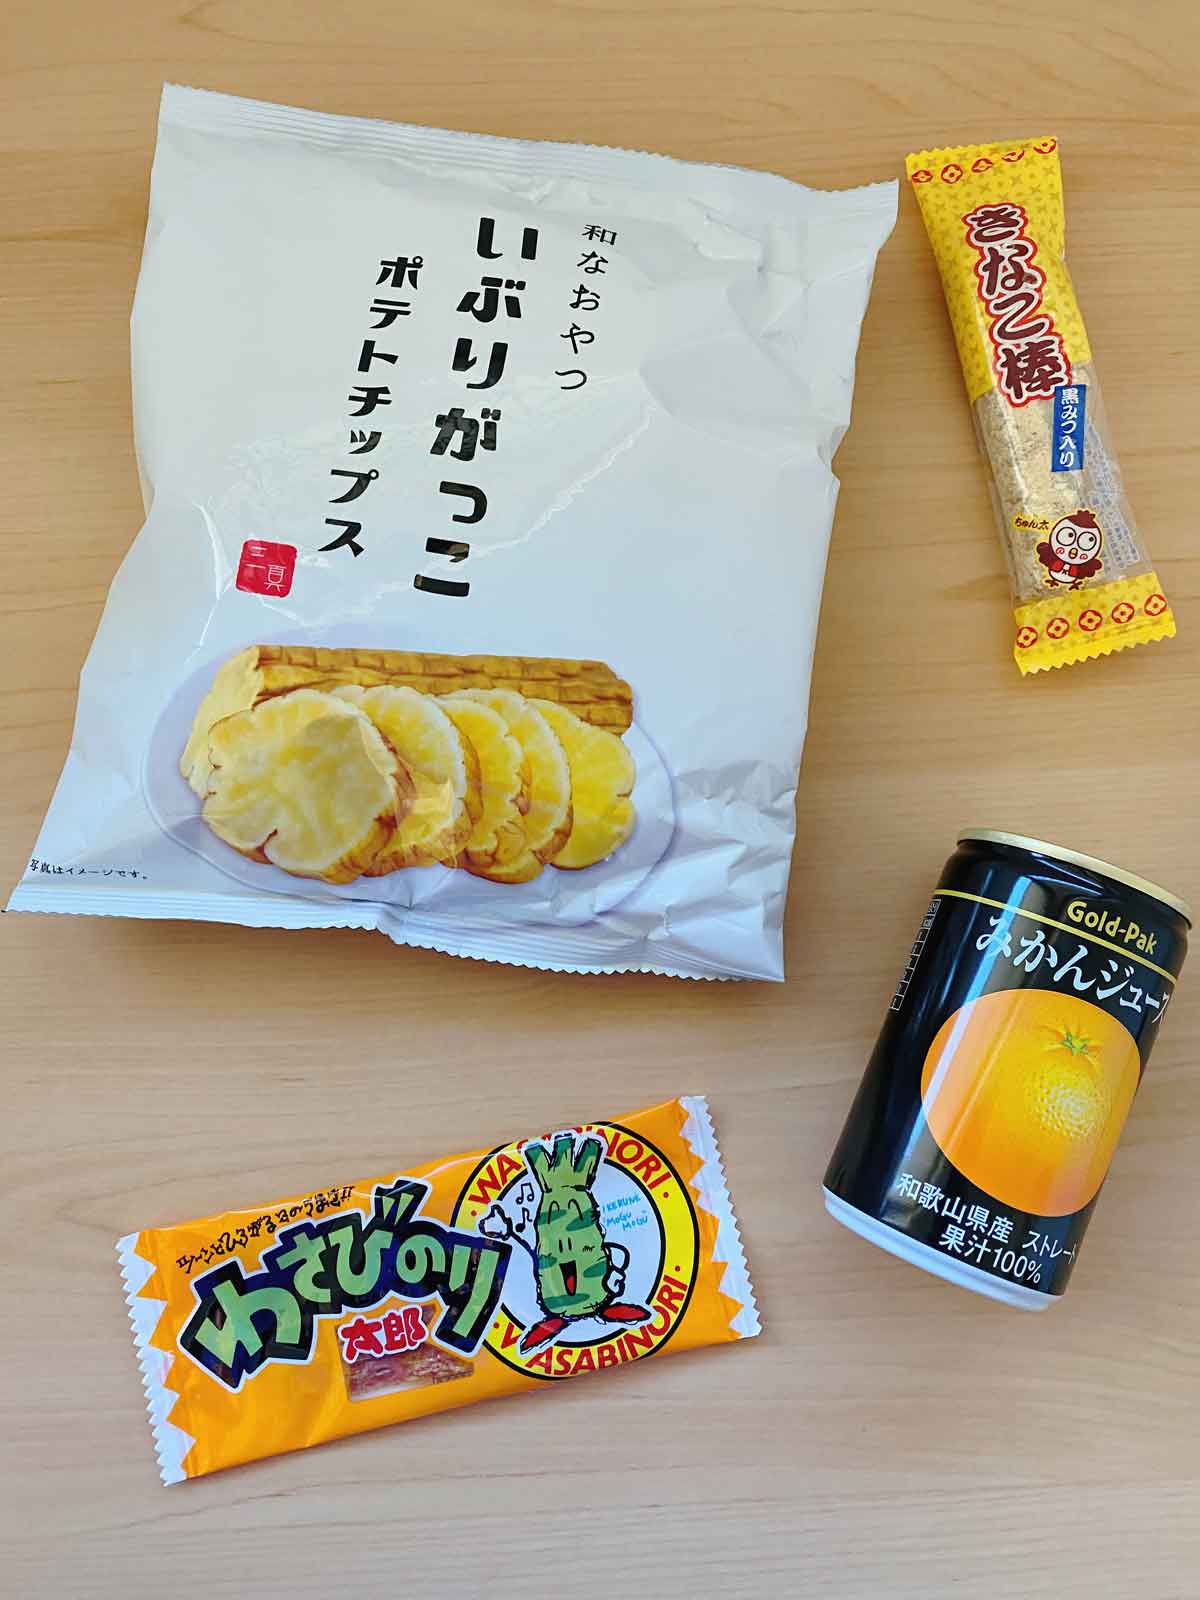 Conteúdo da Tokyo Treat Box - chips de Daikon em conserva, açúcar mascavo e palito Kinako Mochi, carne seca de peixe Wasabi e suco de Mikan